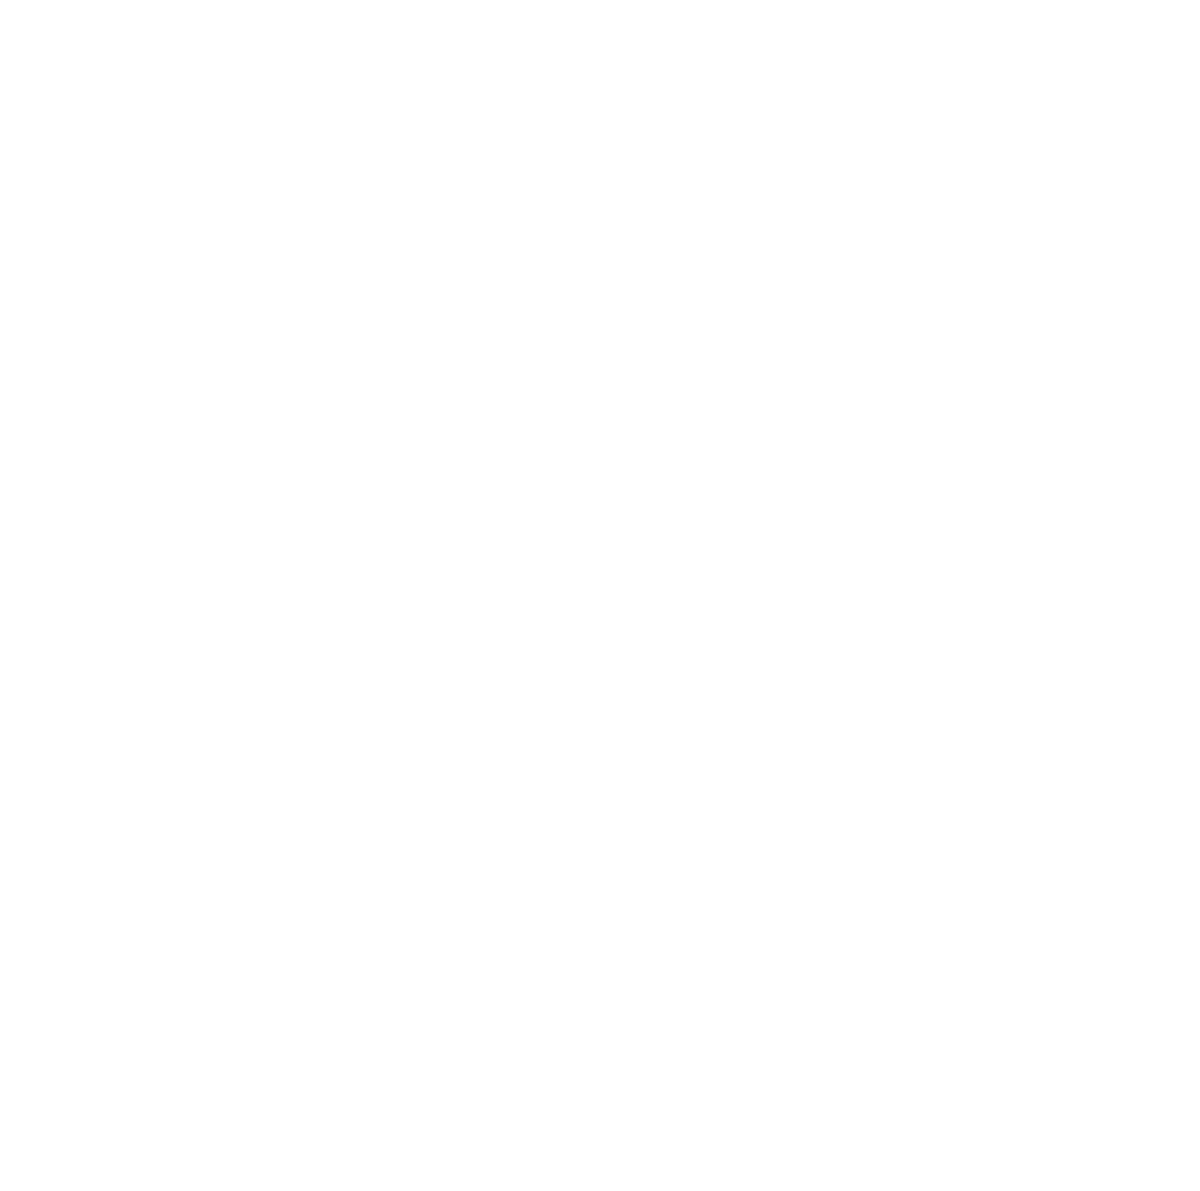 Pall Ant Hajtástechnika logó fehér